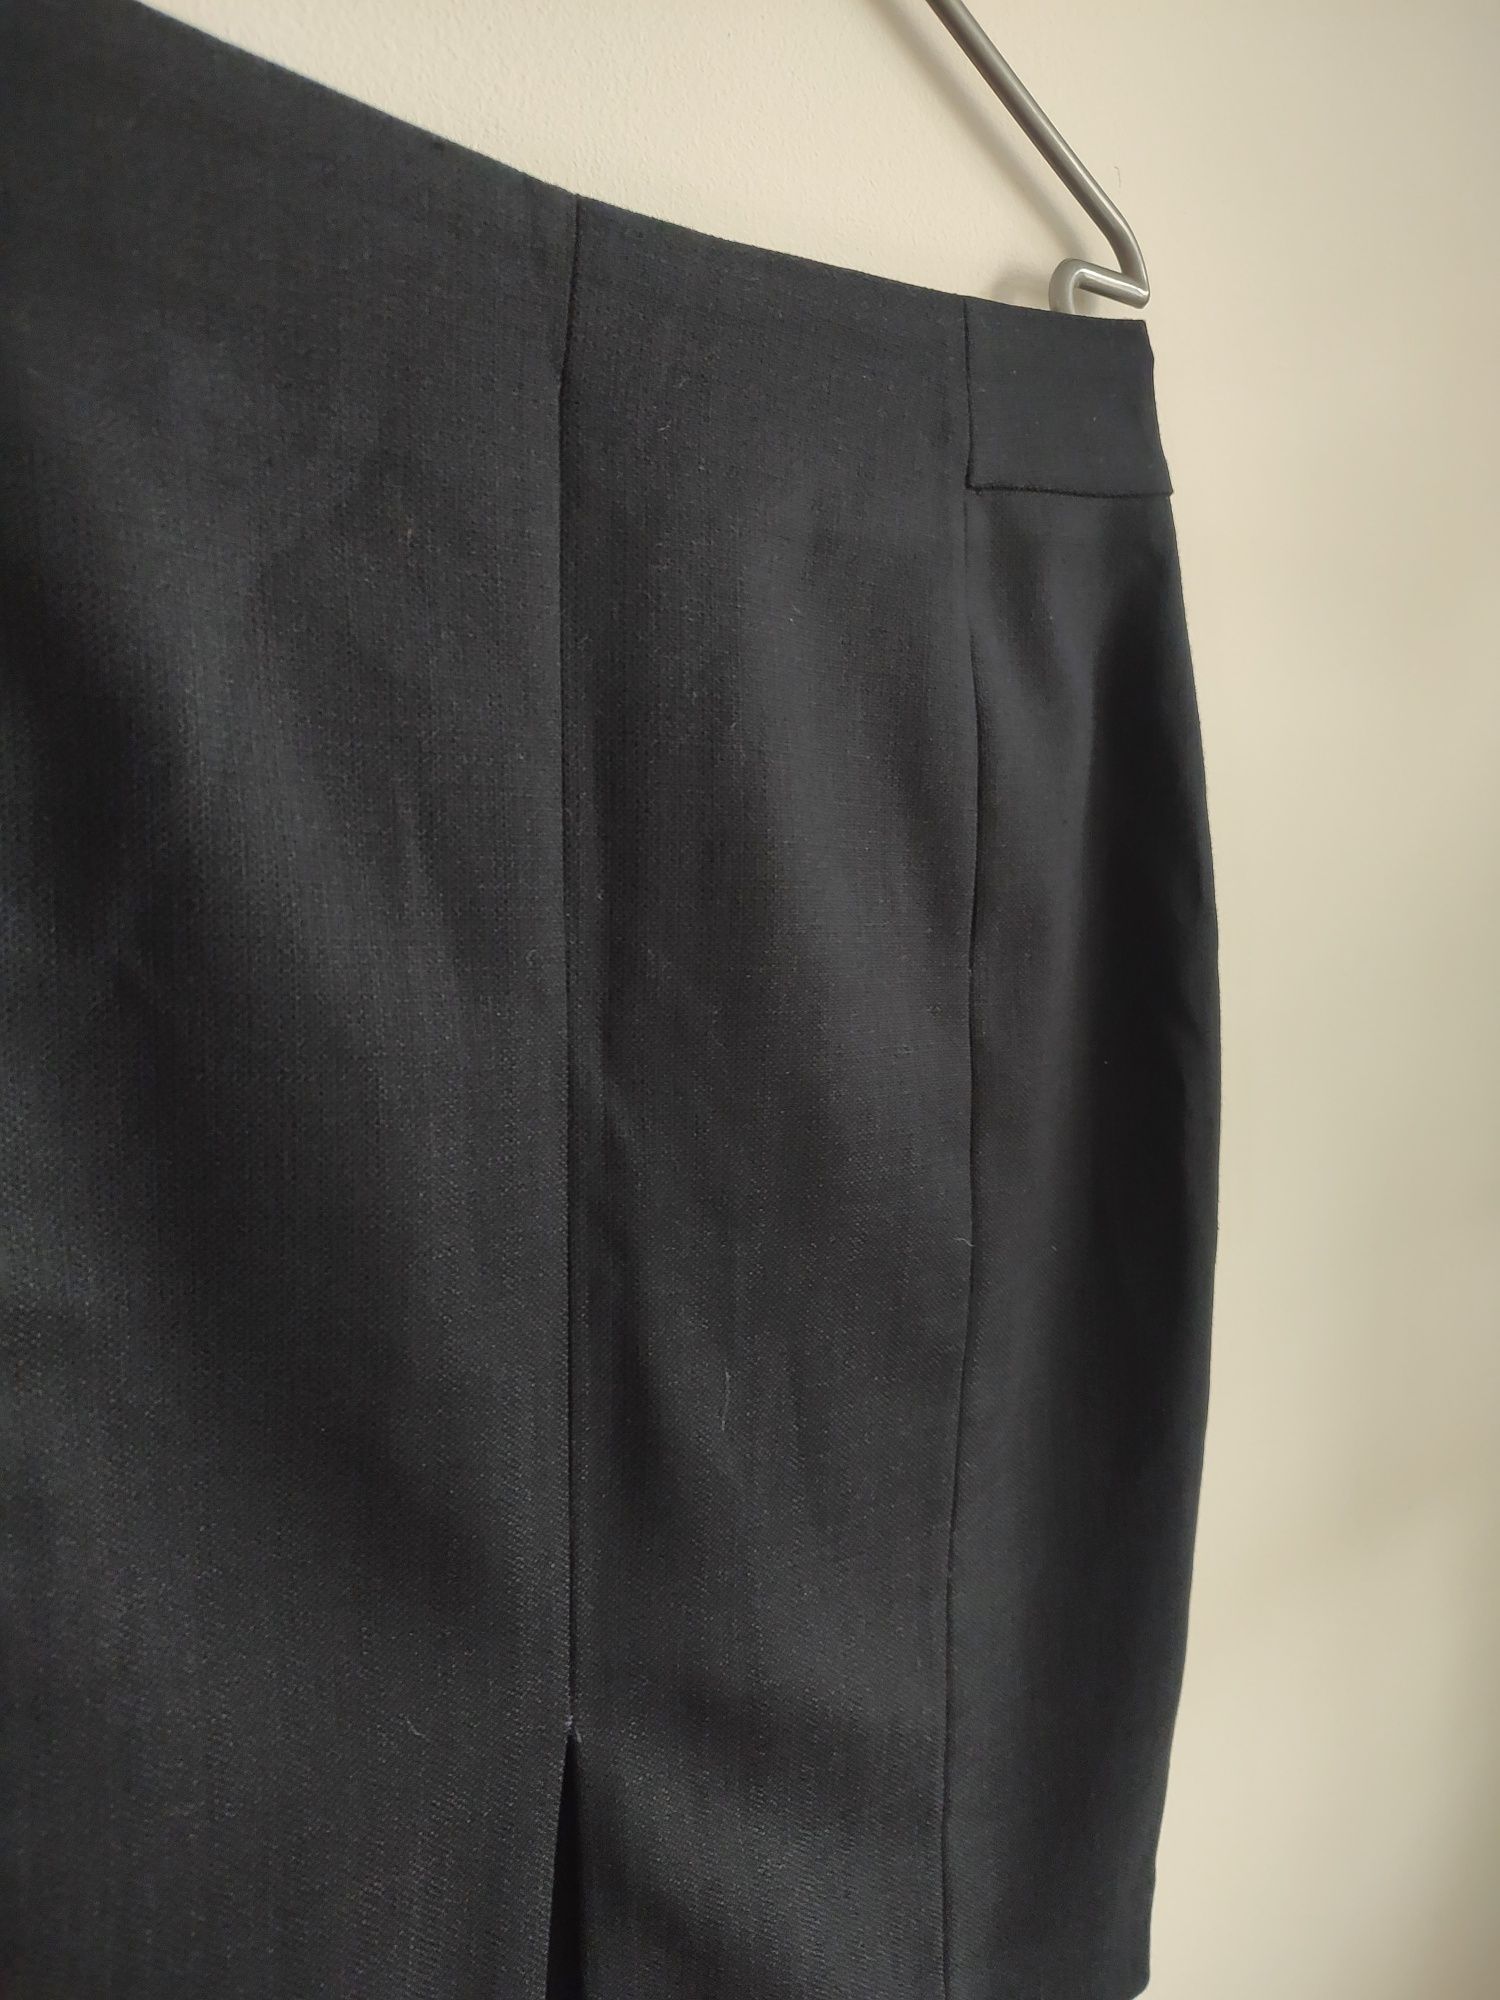 Spódnica spódniczka ołówkowa ciemny granat H&M